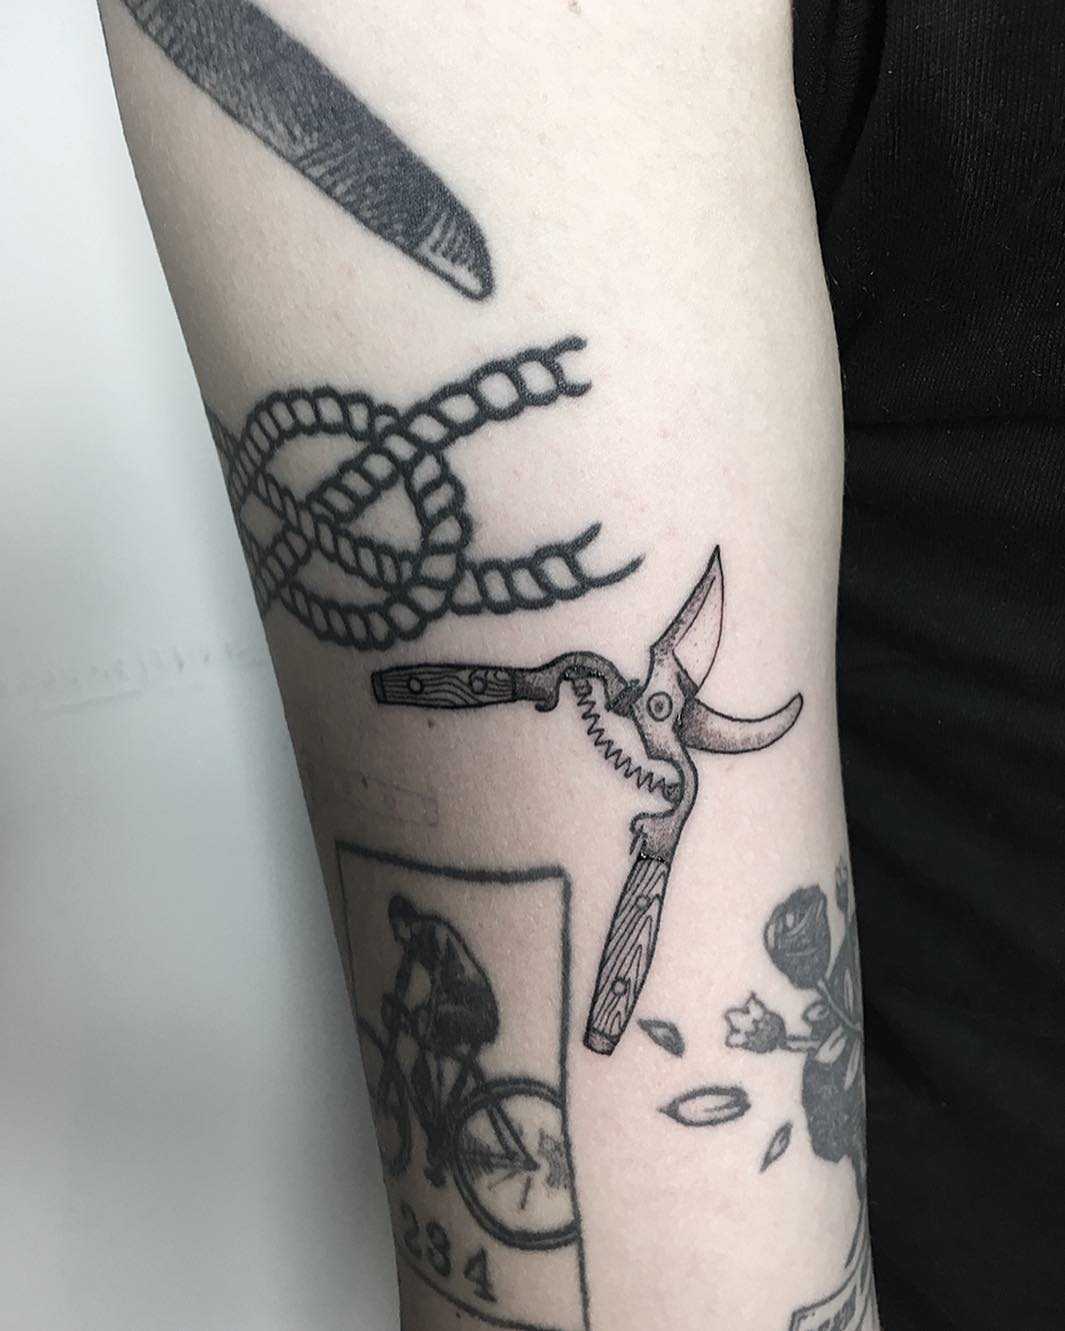 Hand pruners tattoo by tattooist Spence @zz tattoo